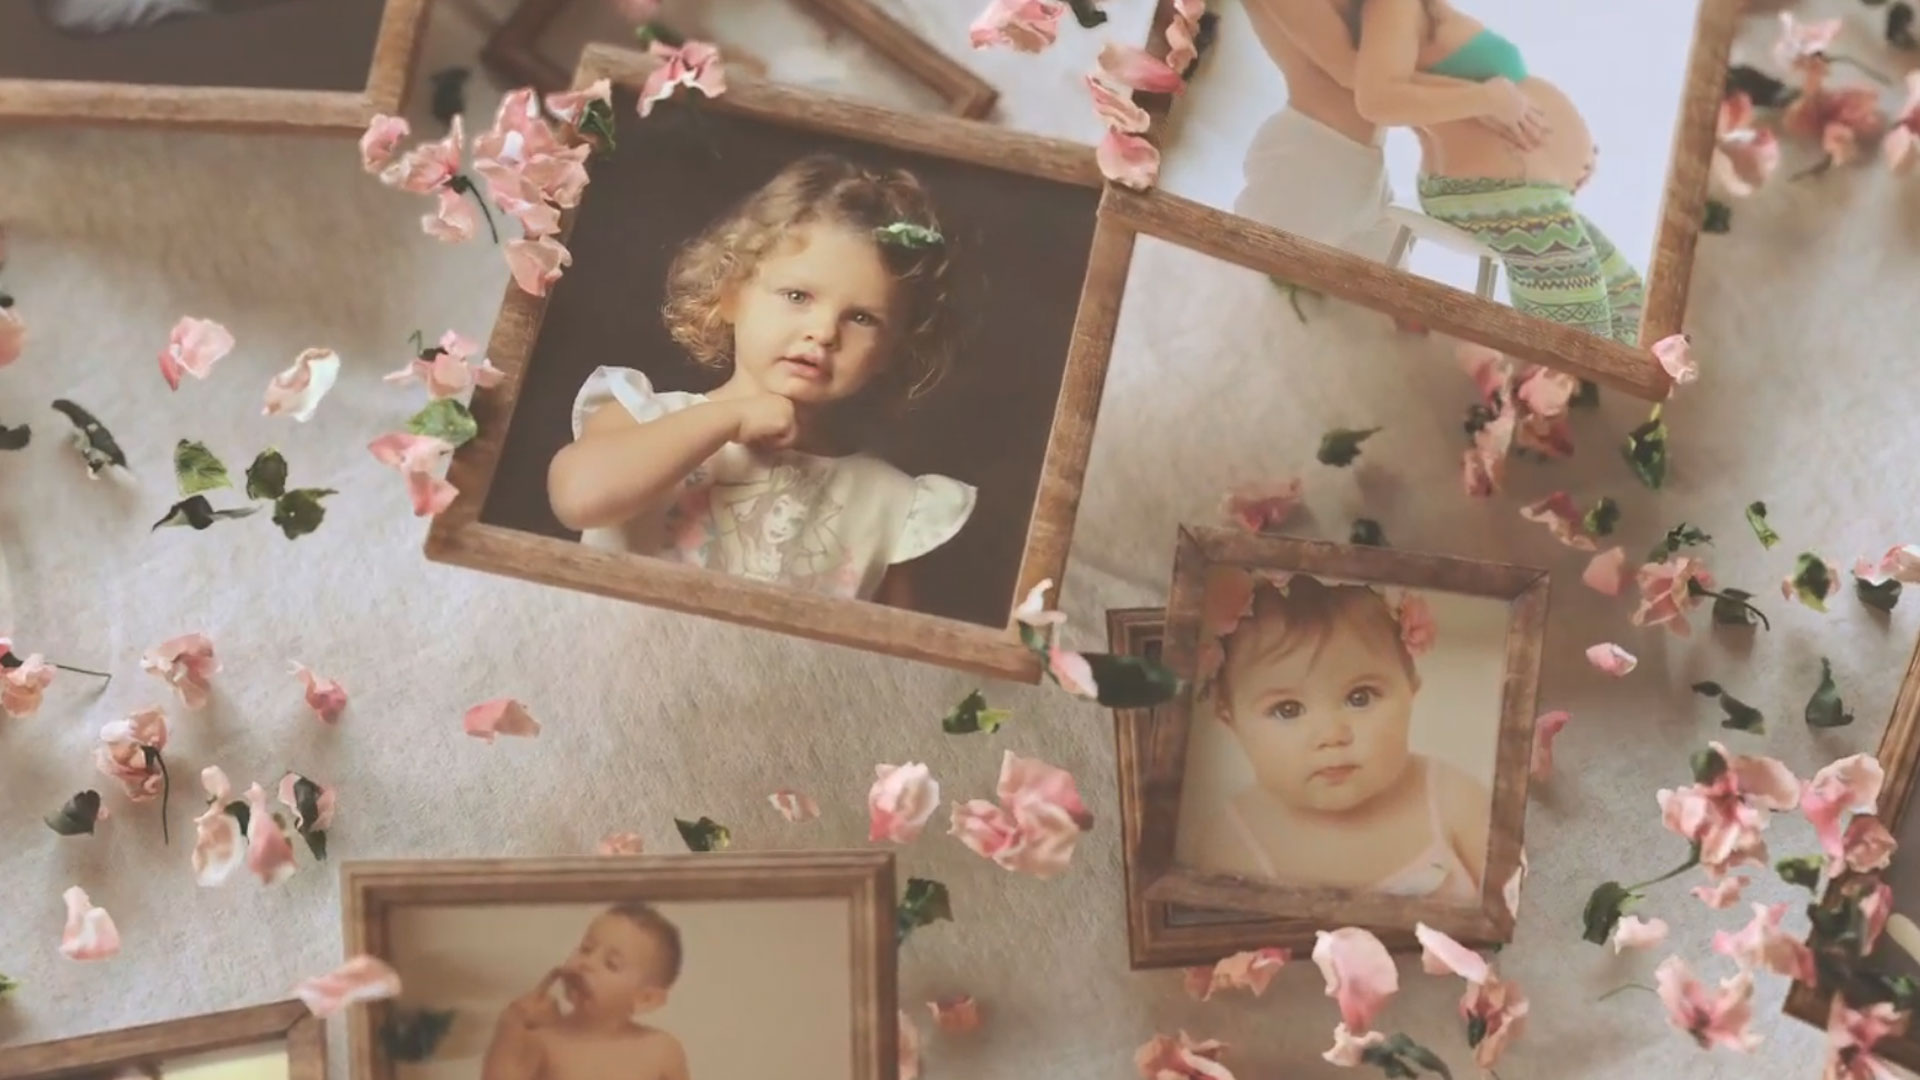 Servizi fotografici professionali per bambini e donne in gravidanza – Video Promo